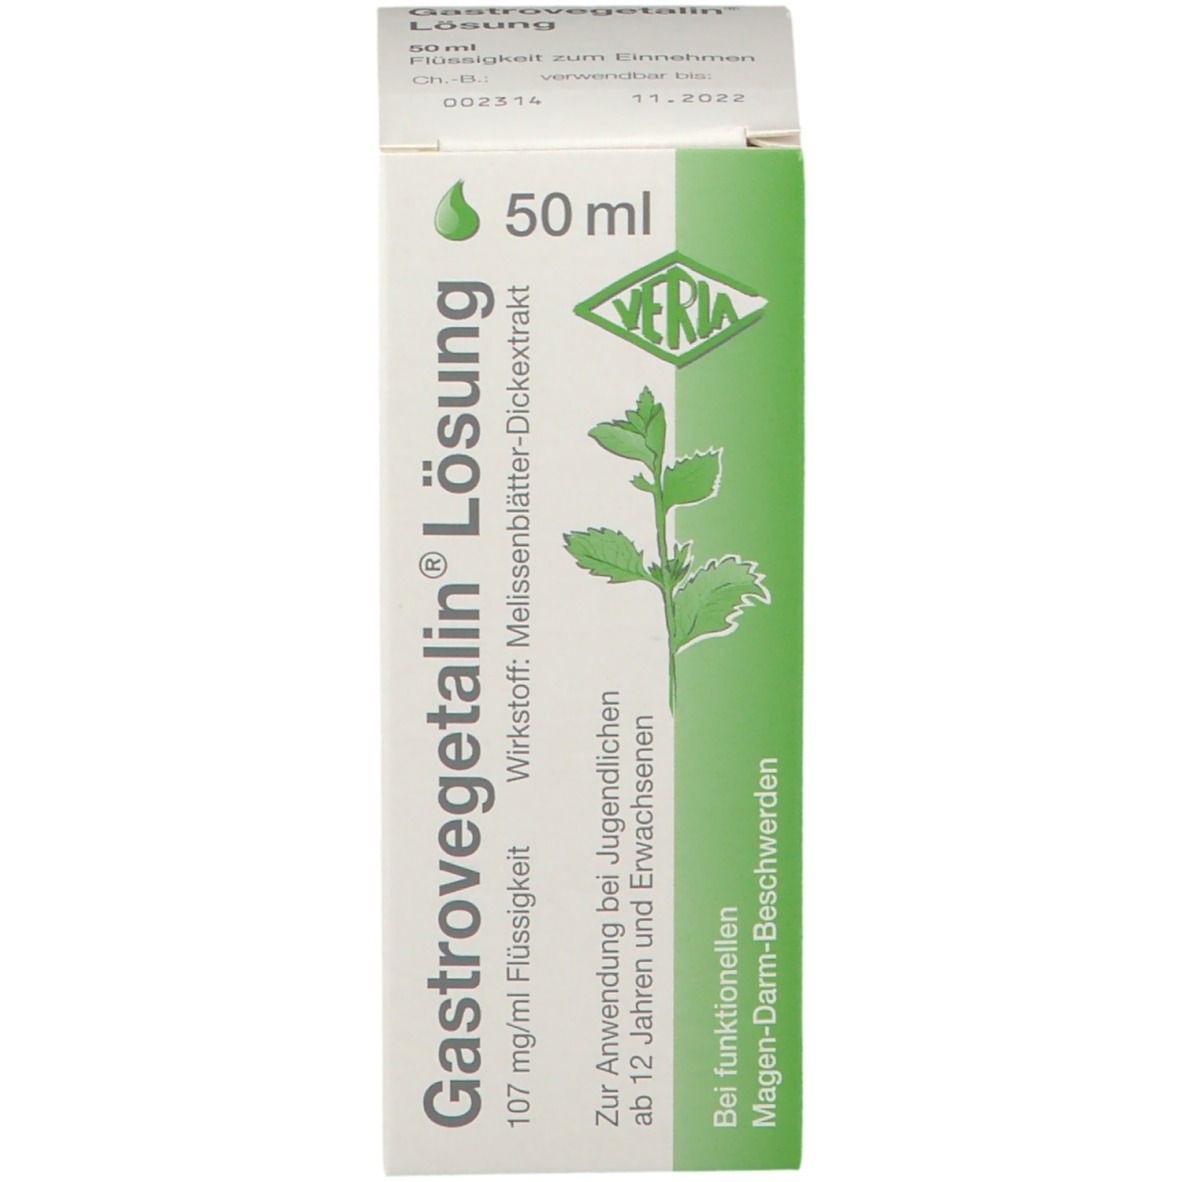 Gastrovegetalin®